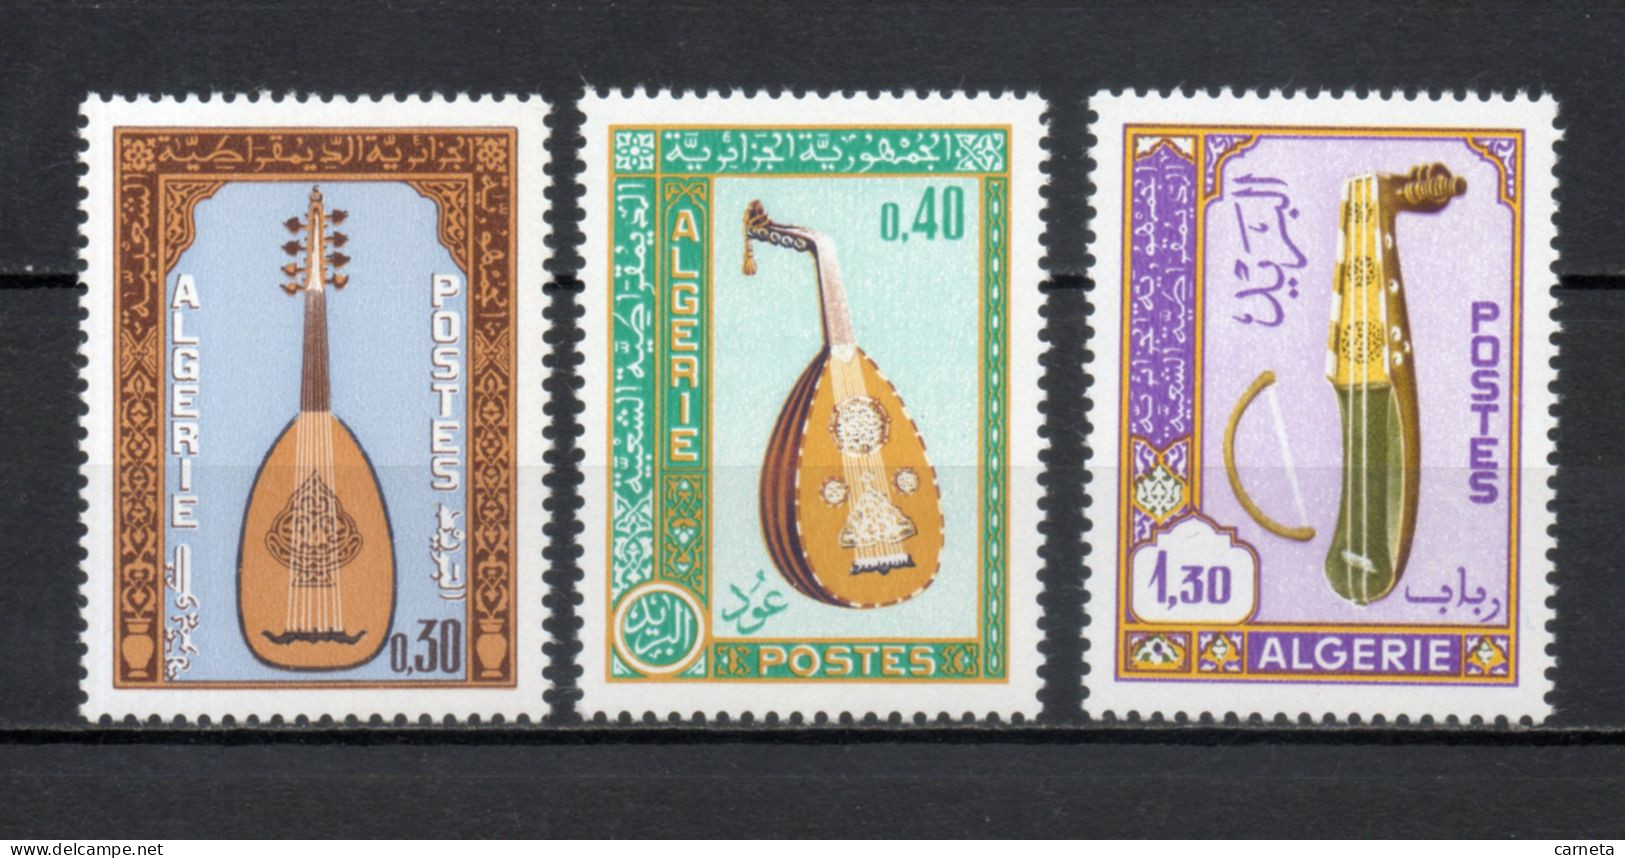 ALGERIE N° 460 à 462   NEUFS SANS CHARNIERE COTE 5.60€    INSTRUMENTS DE MUSIQUE - Algeria (1962-...)